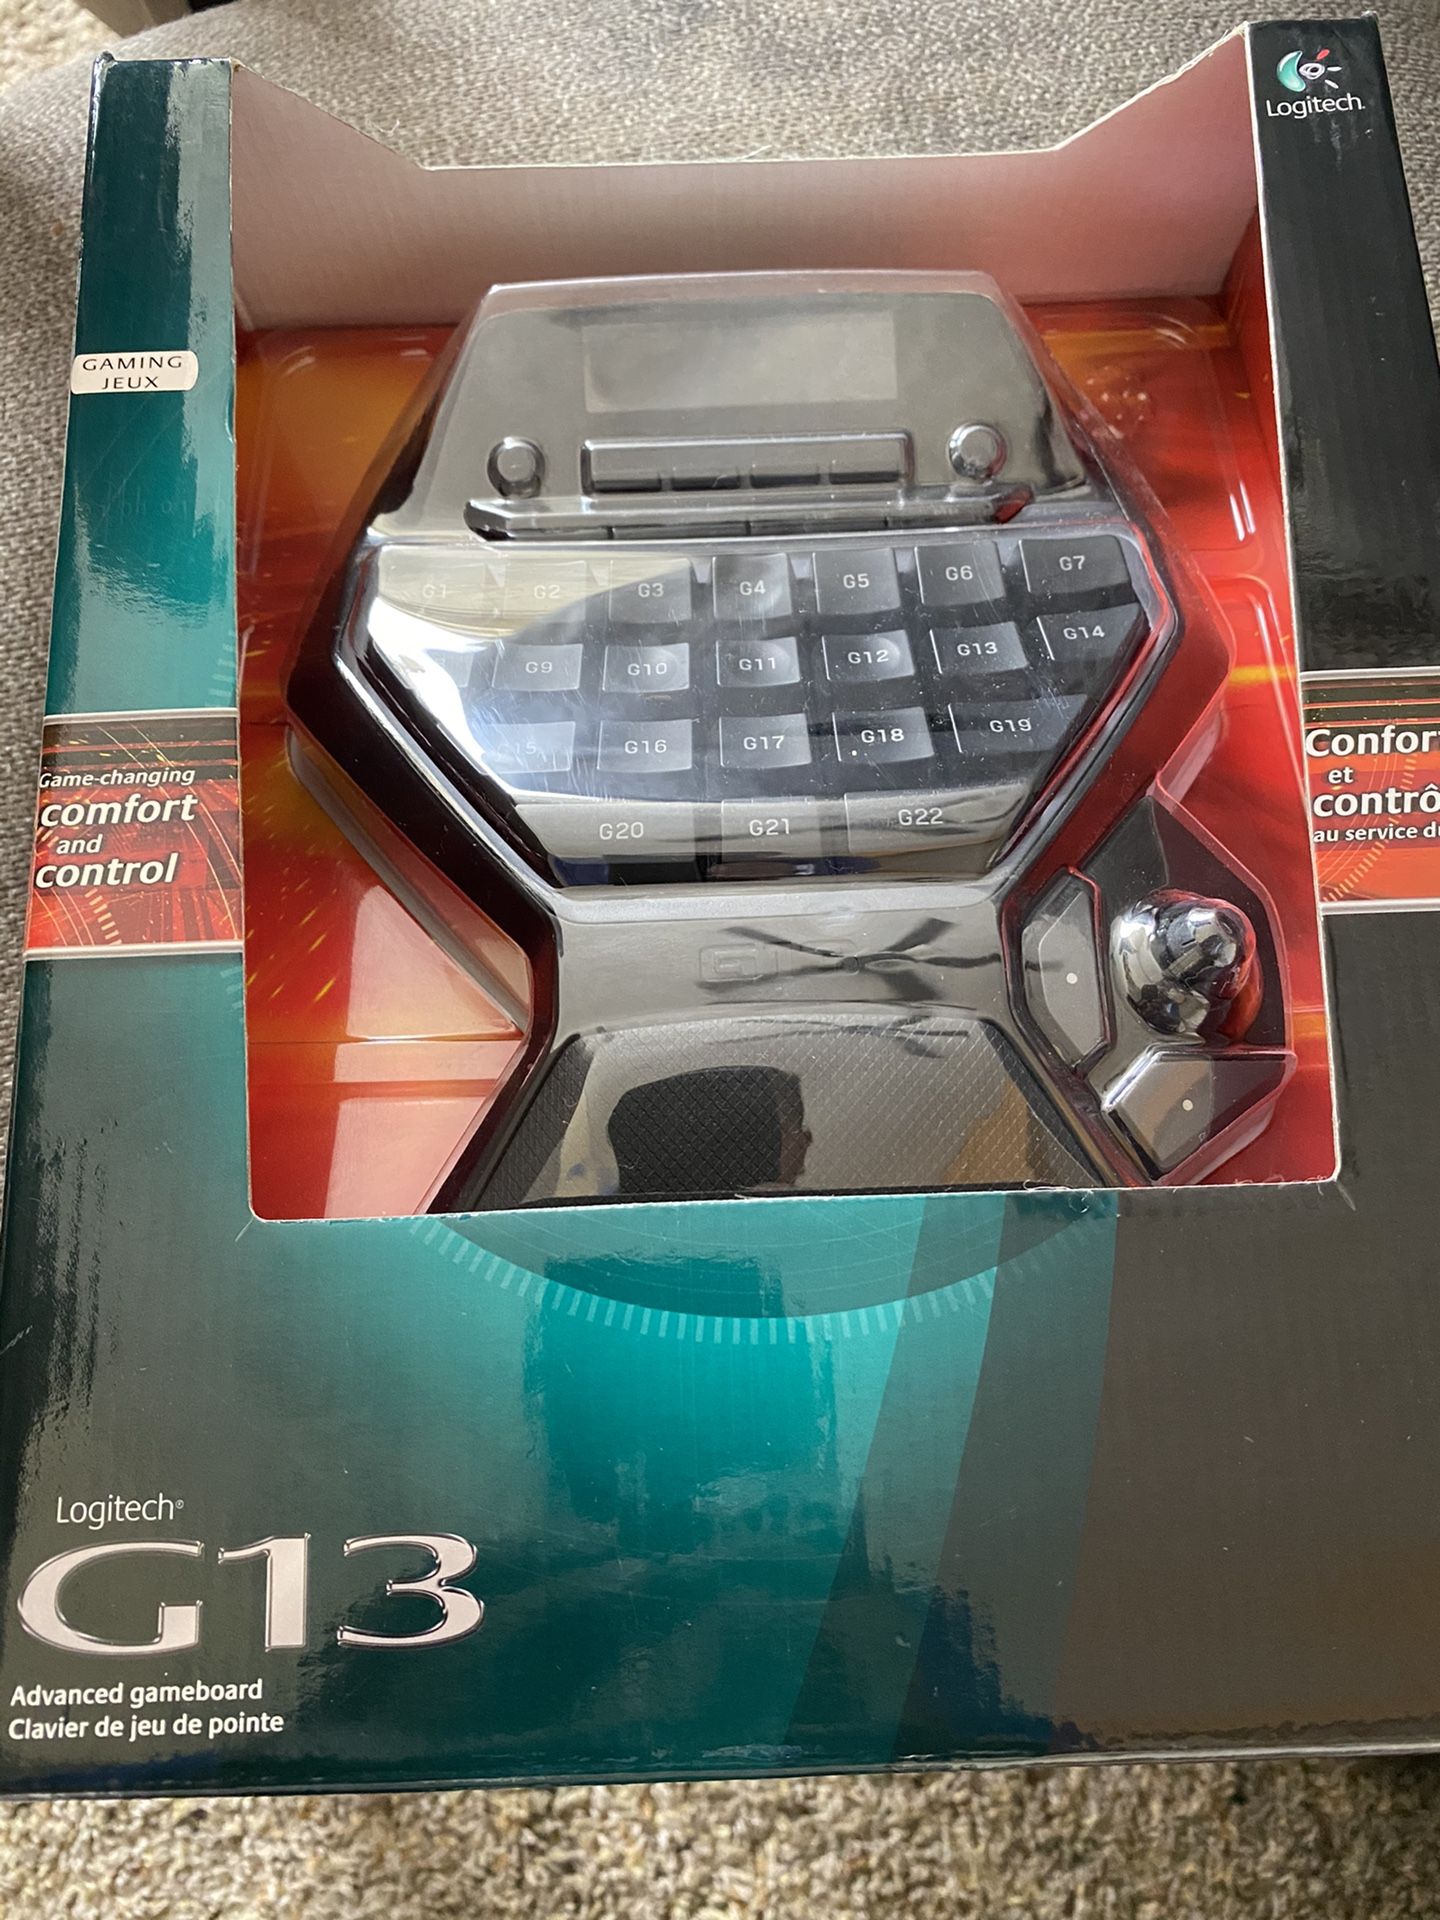 Logitech G13 gameboard